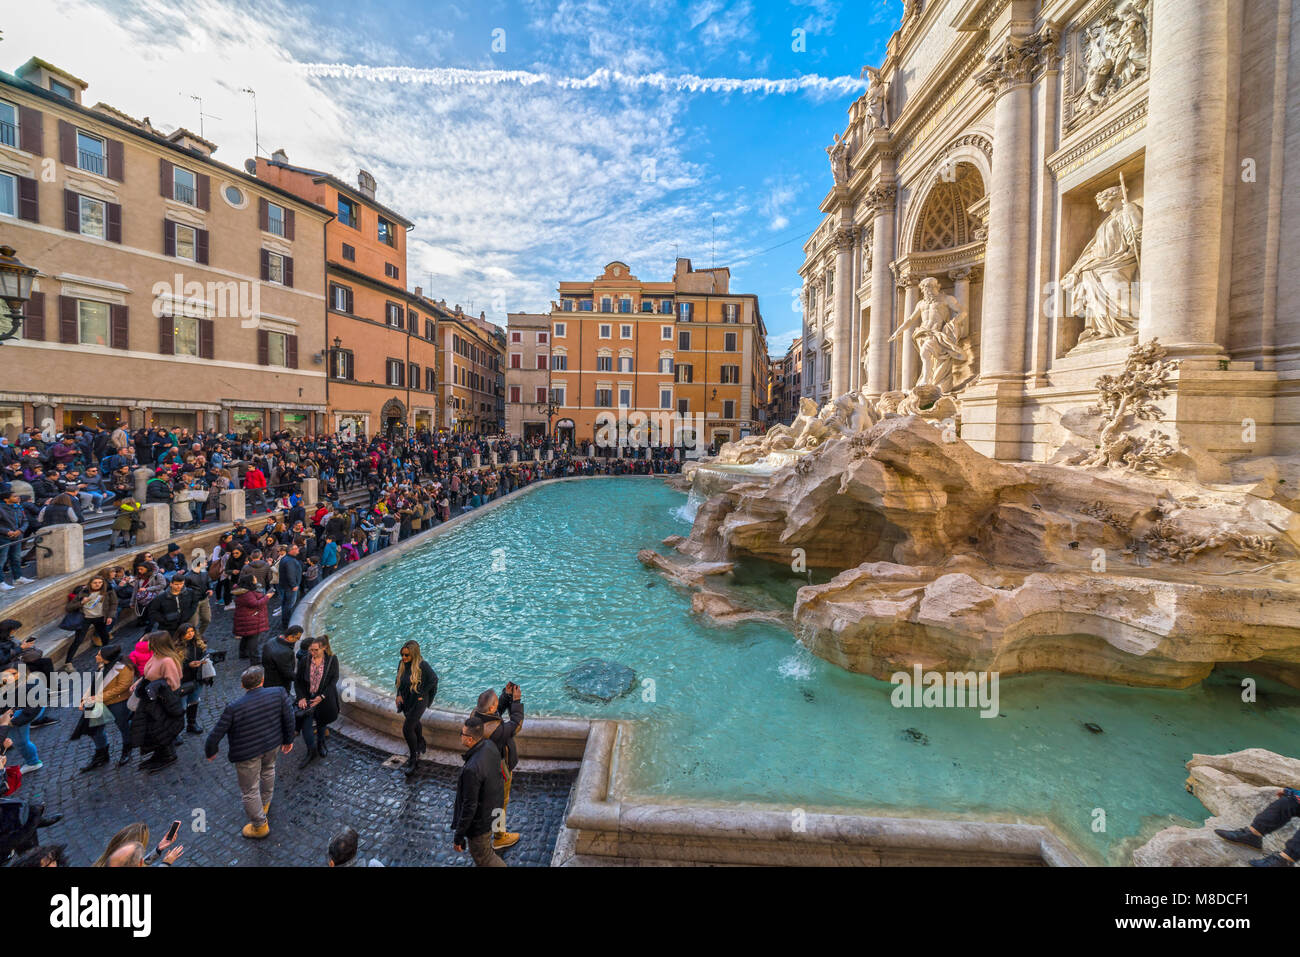 ROME, ITALIE - Le 5 janvier 2018 : les touristes visitant la célèbre fontaine de Trevi dans un beau temps. Fontaine de Trevi est l'un des plus visités à Rome Banque D'Images